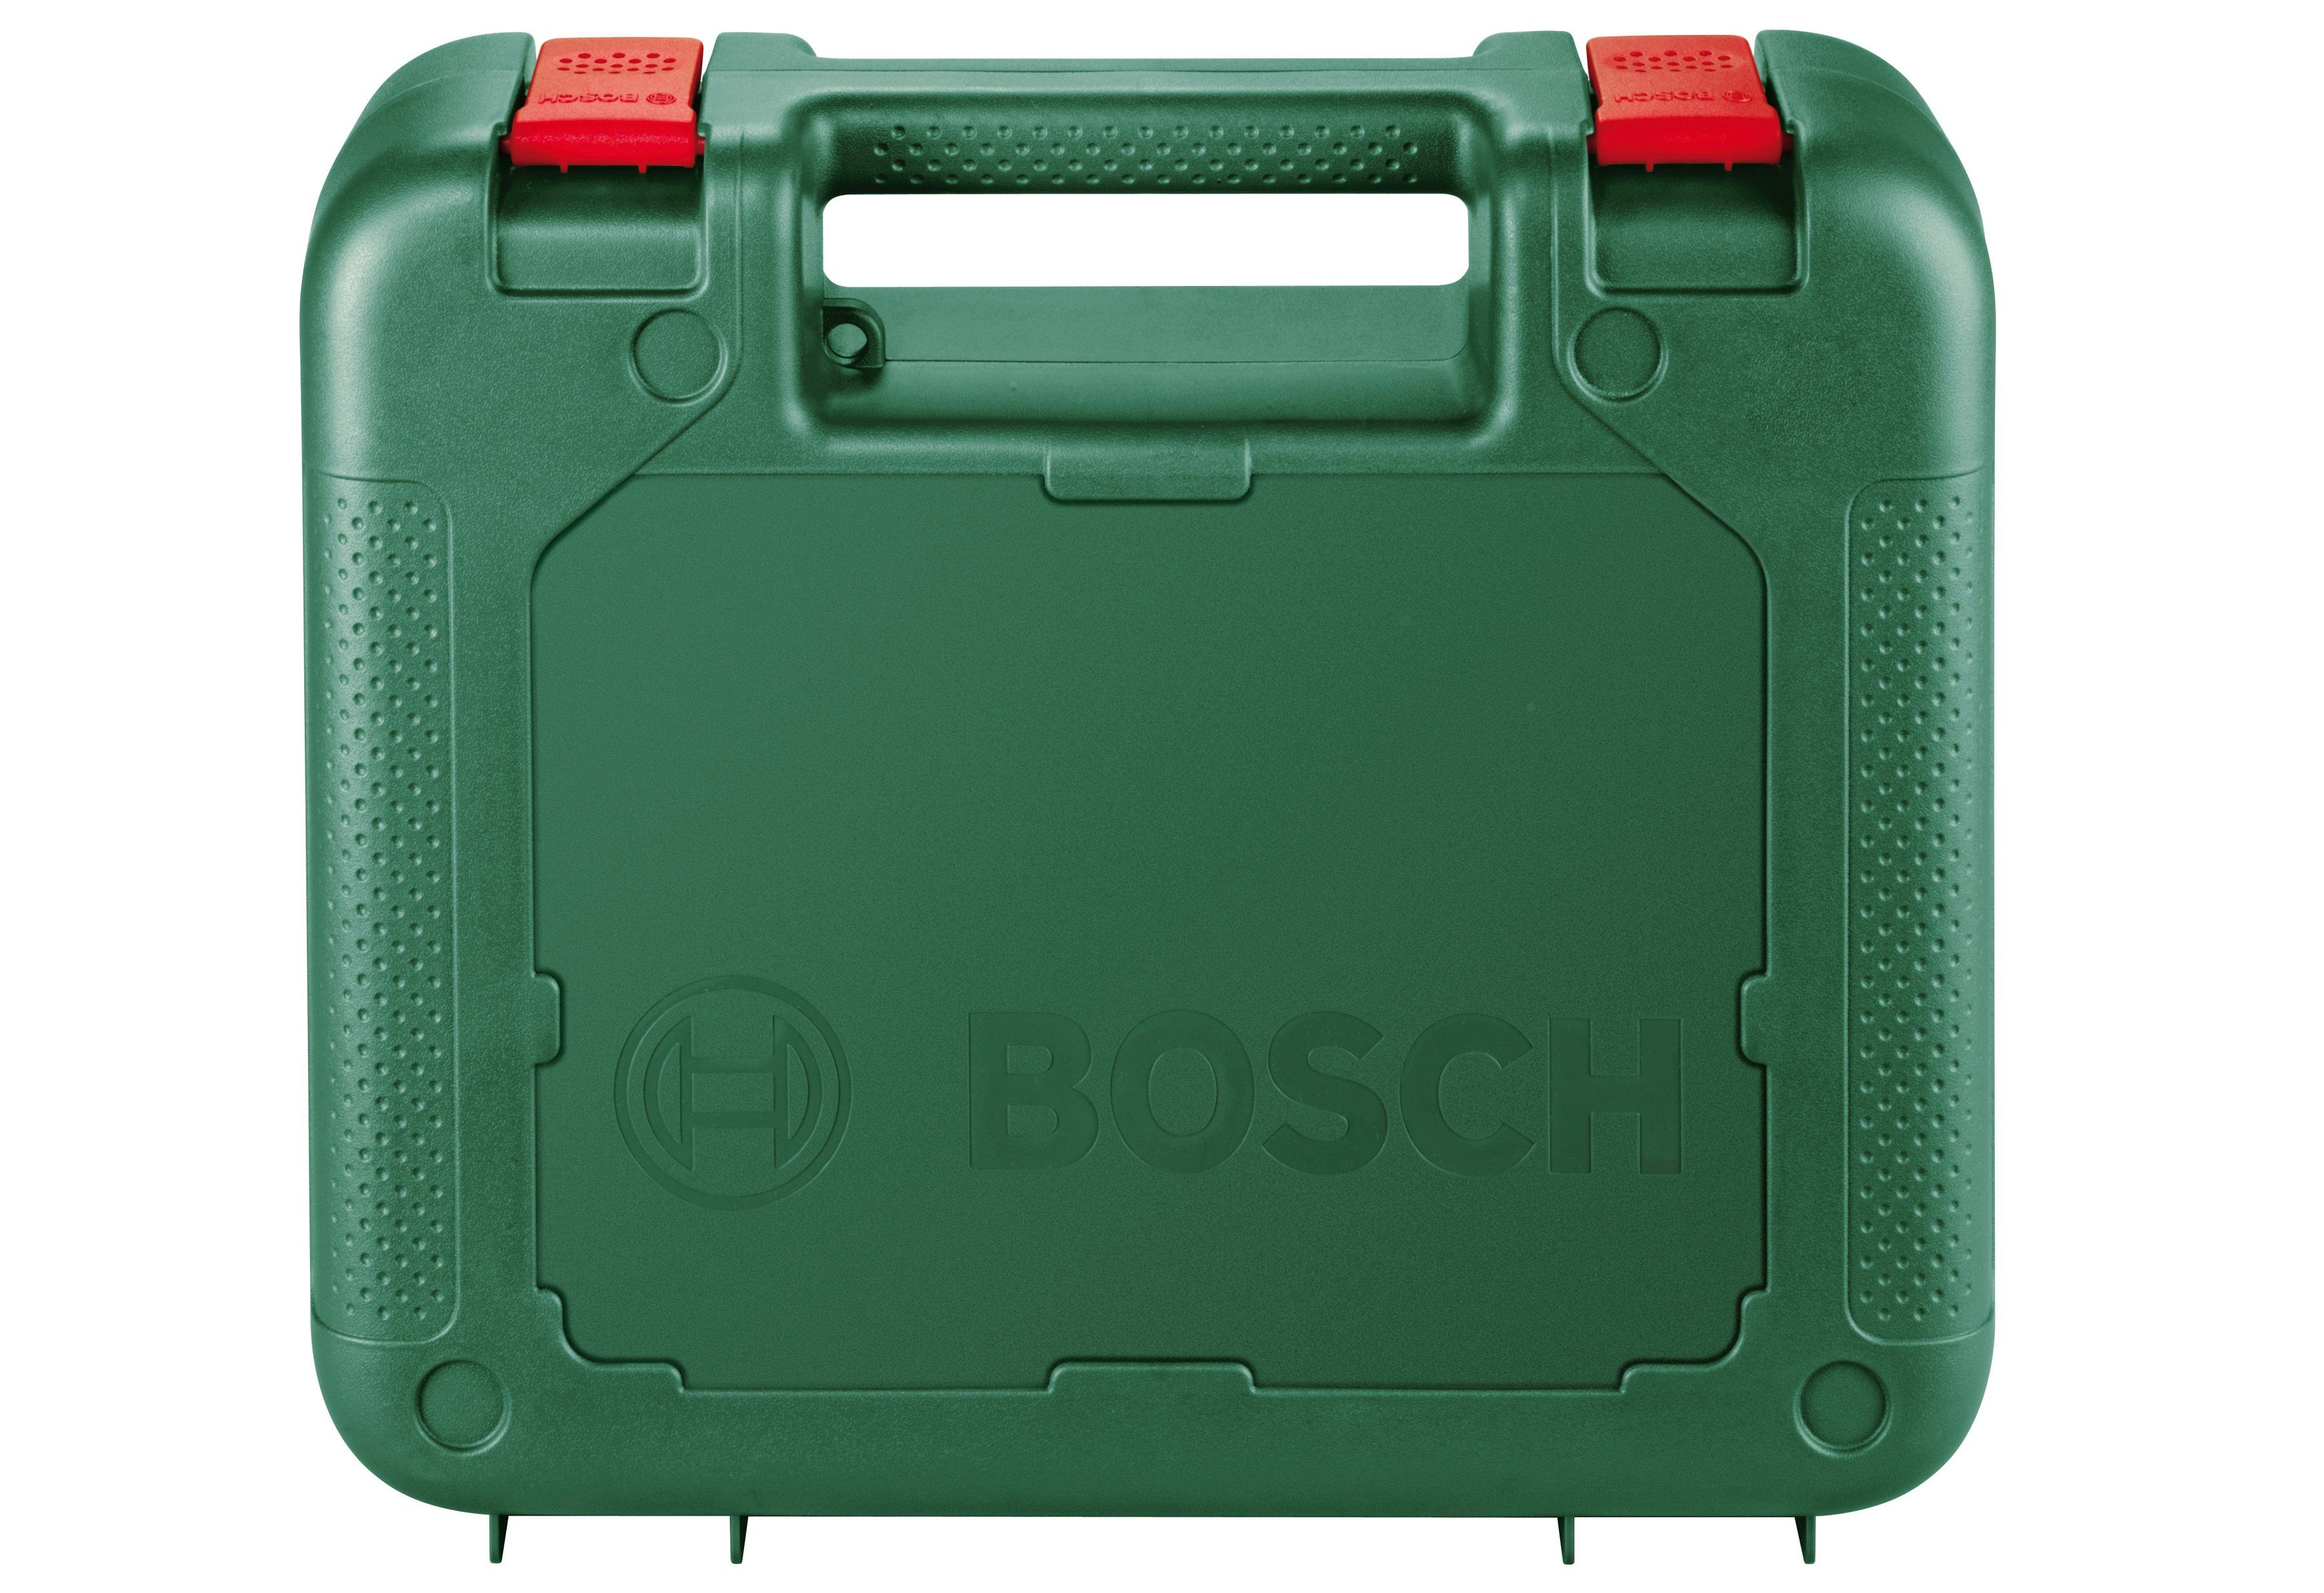 Bosch Home Garden PEL, PST 620 900 W & Stichsäge